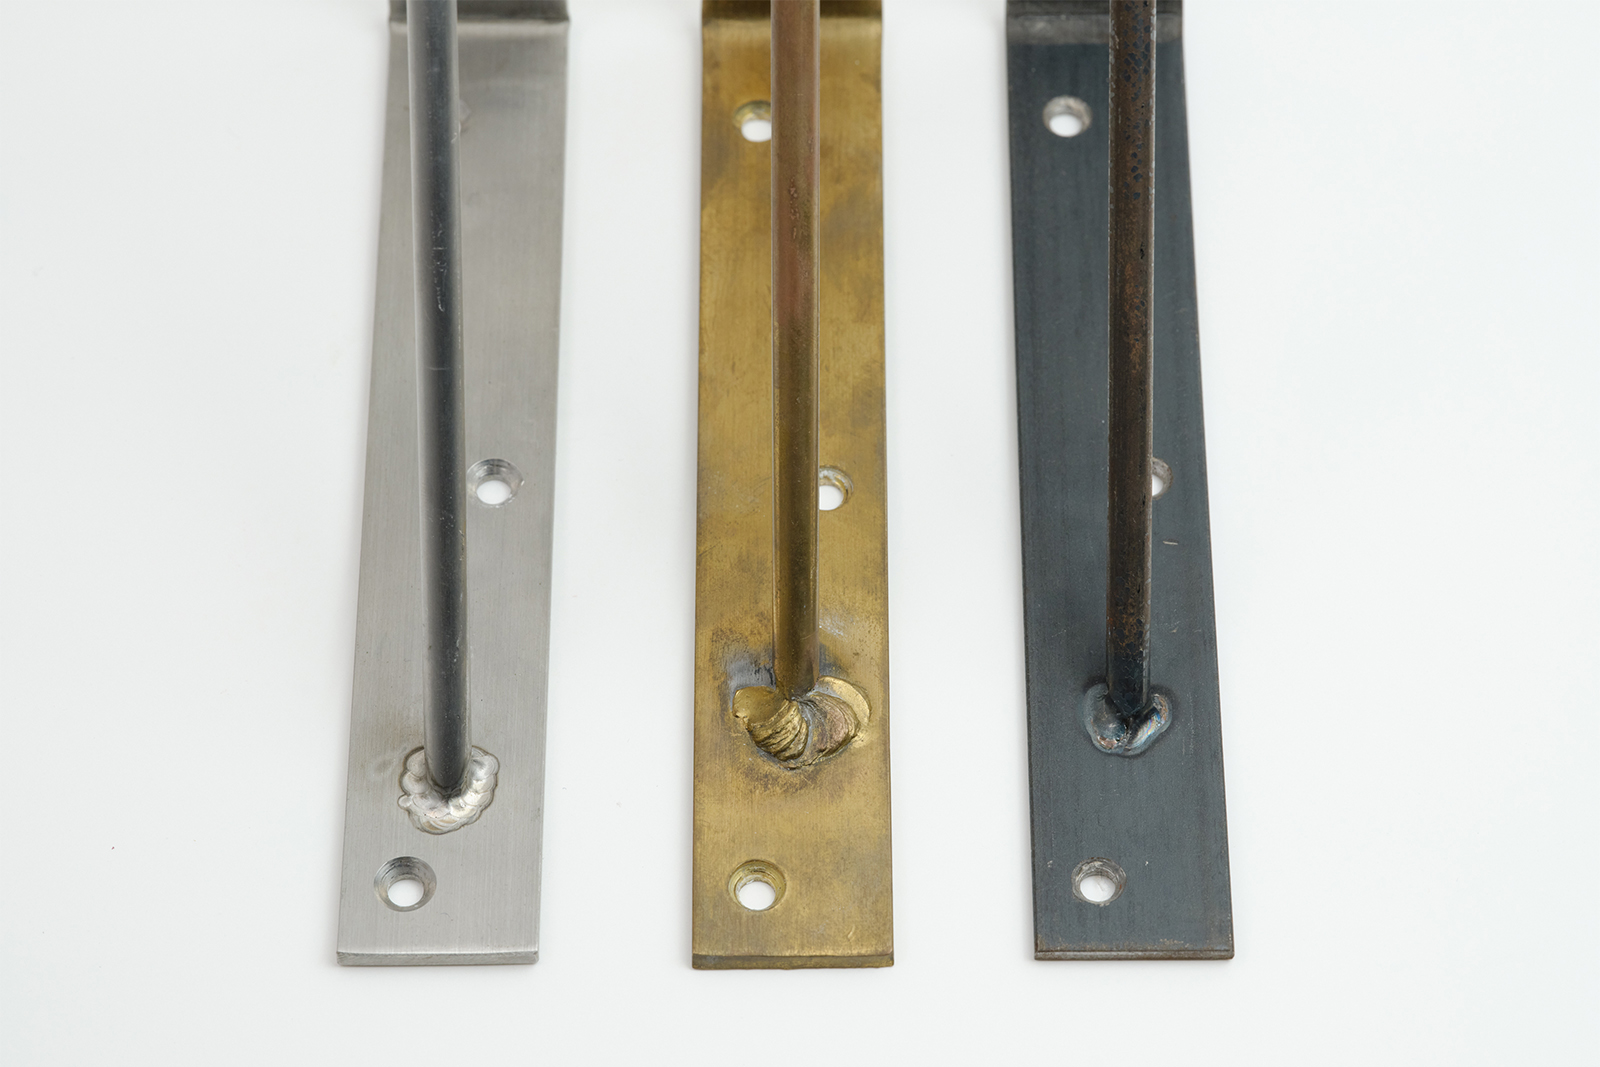 棚受け金物 真鍮 D150 PS-BK001-07-G141 素材は全部で3種類。左から、ステンレス・真鍮・鉄